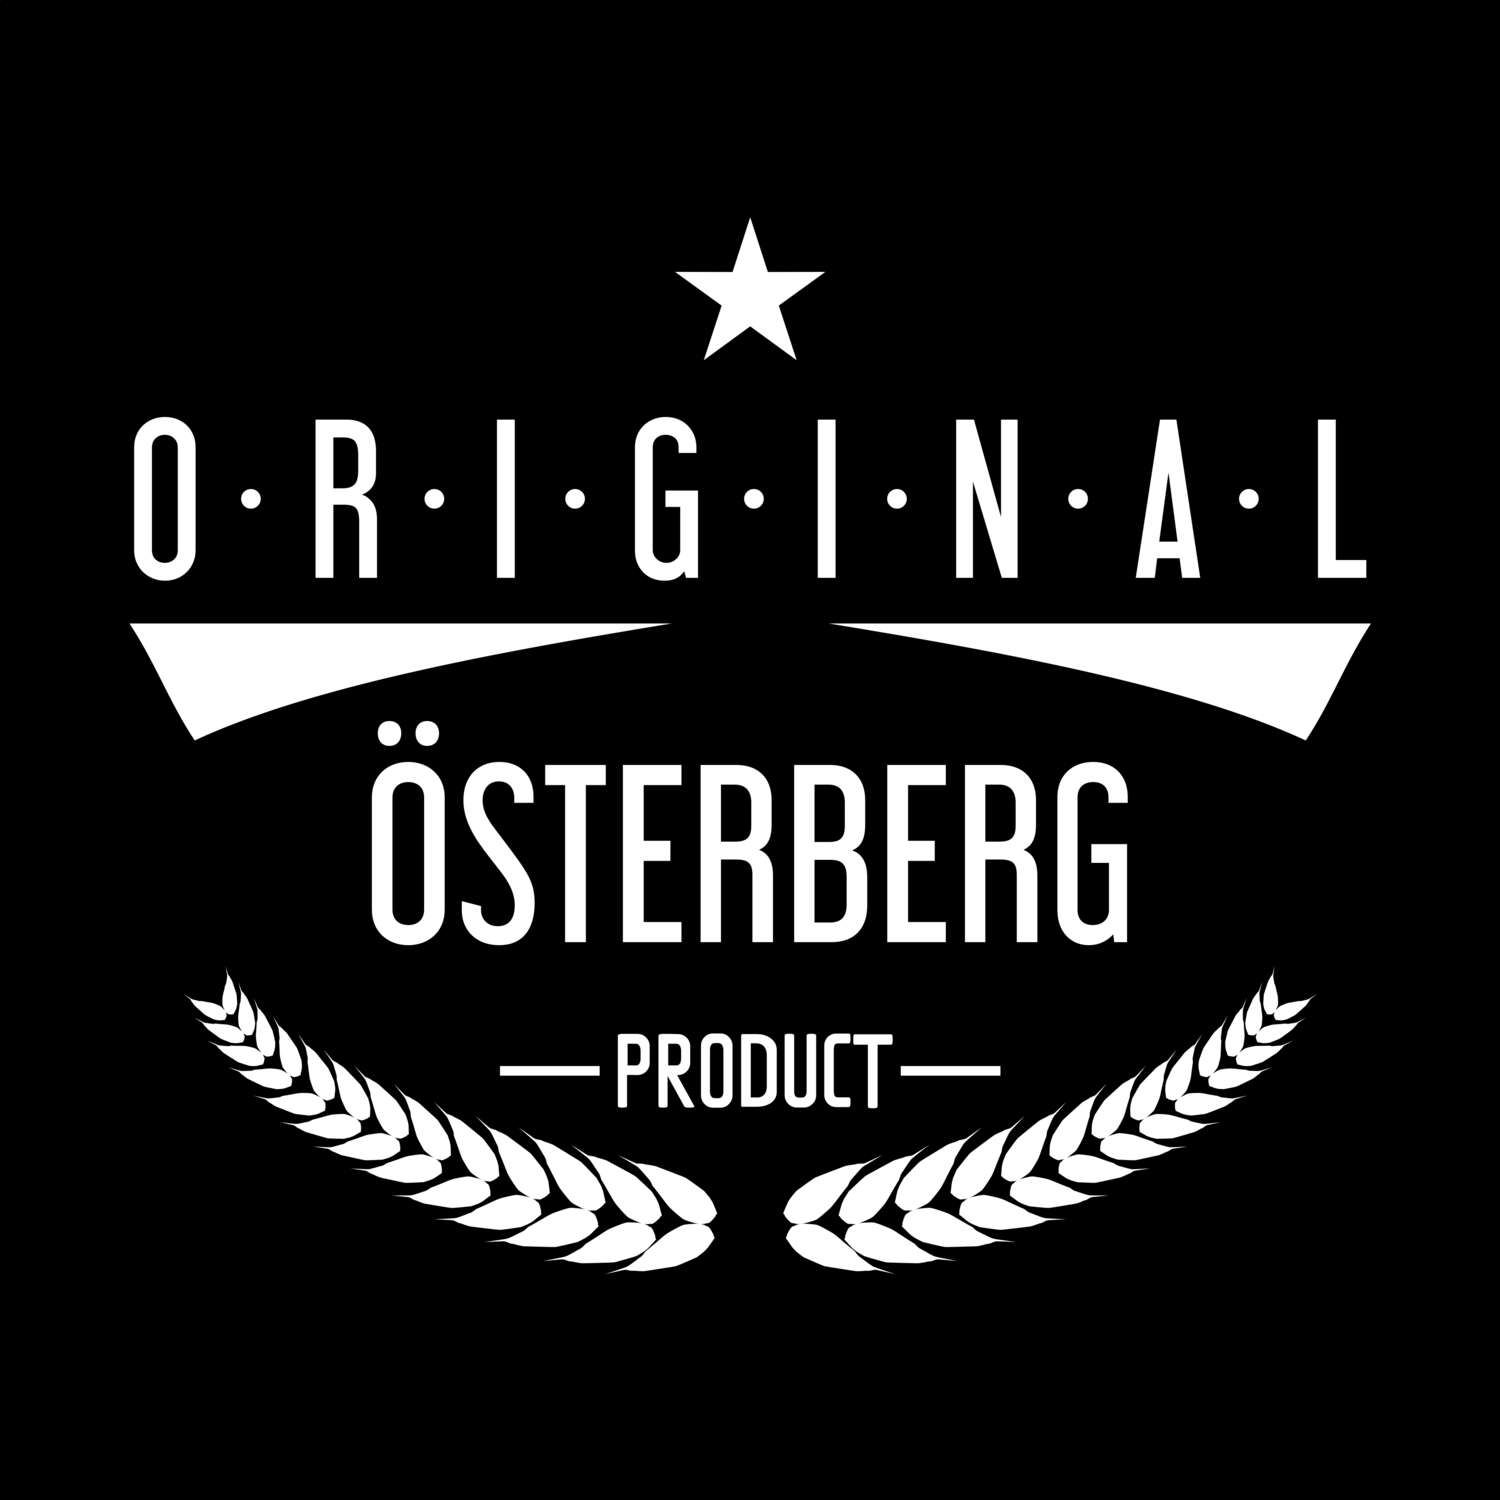 Österberg T-Shirt »Original Product«